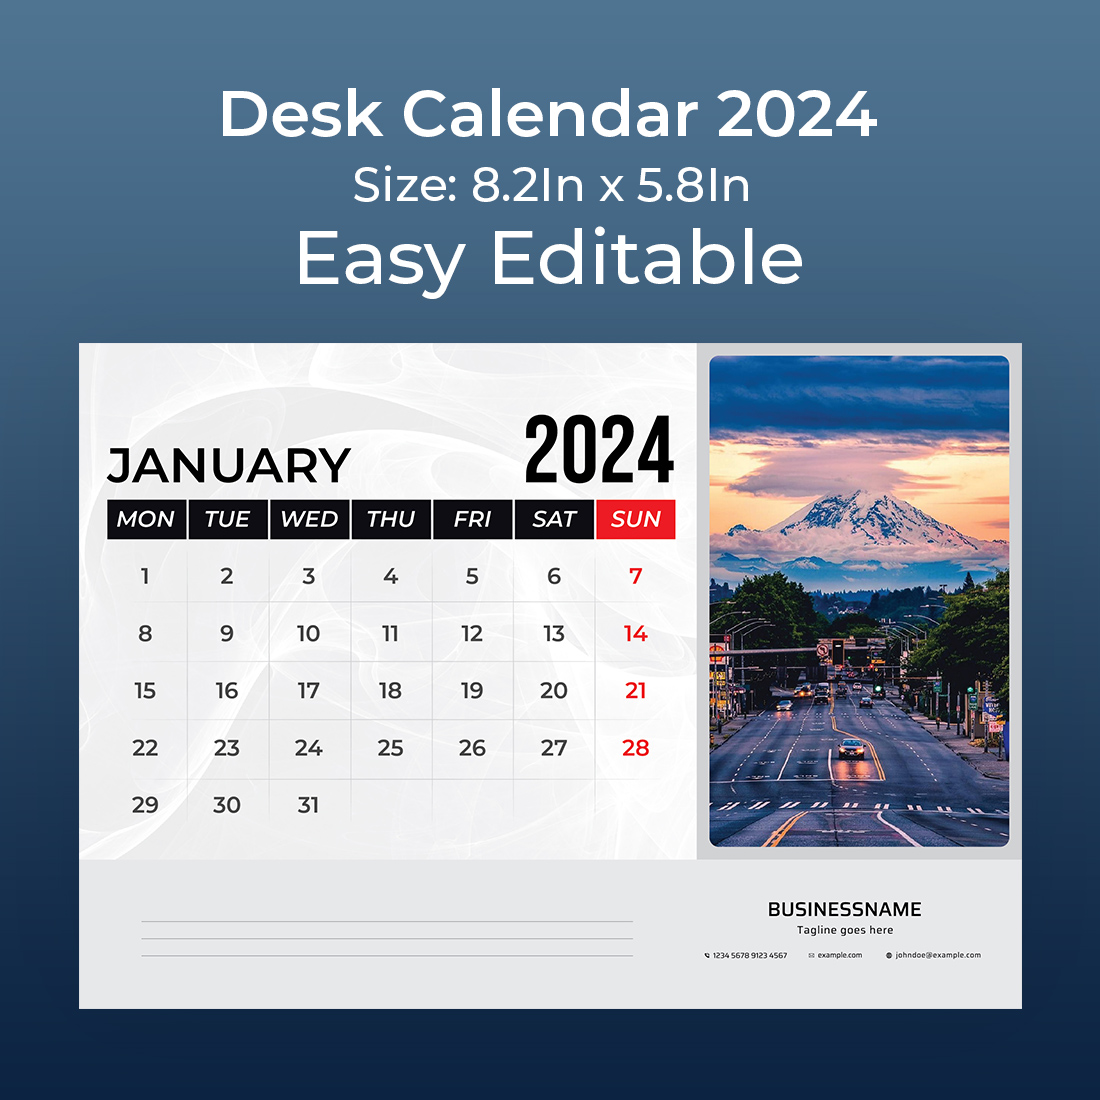 desk calendar 2024 cover image.